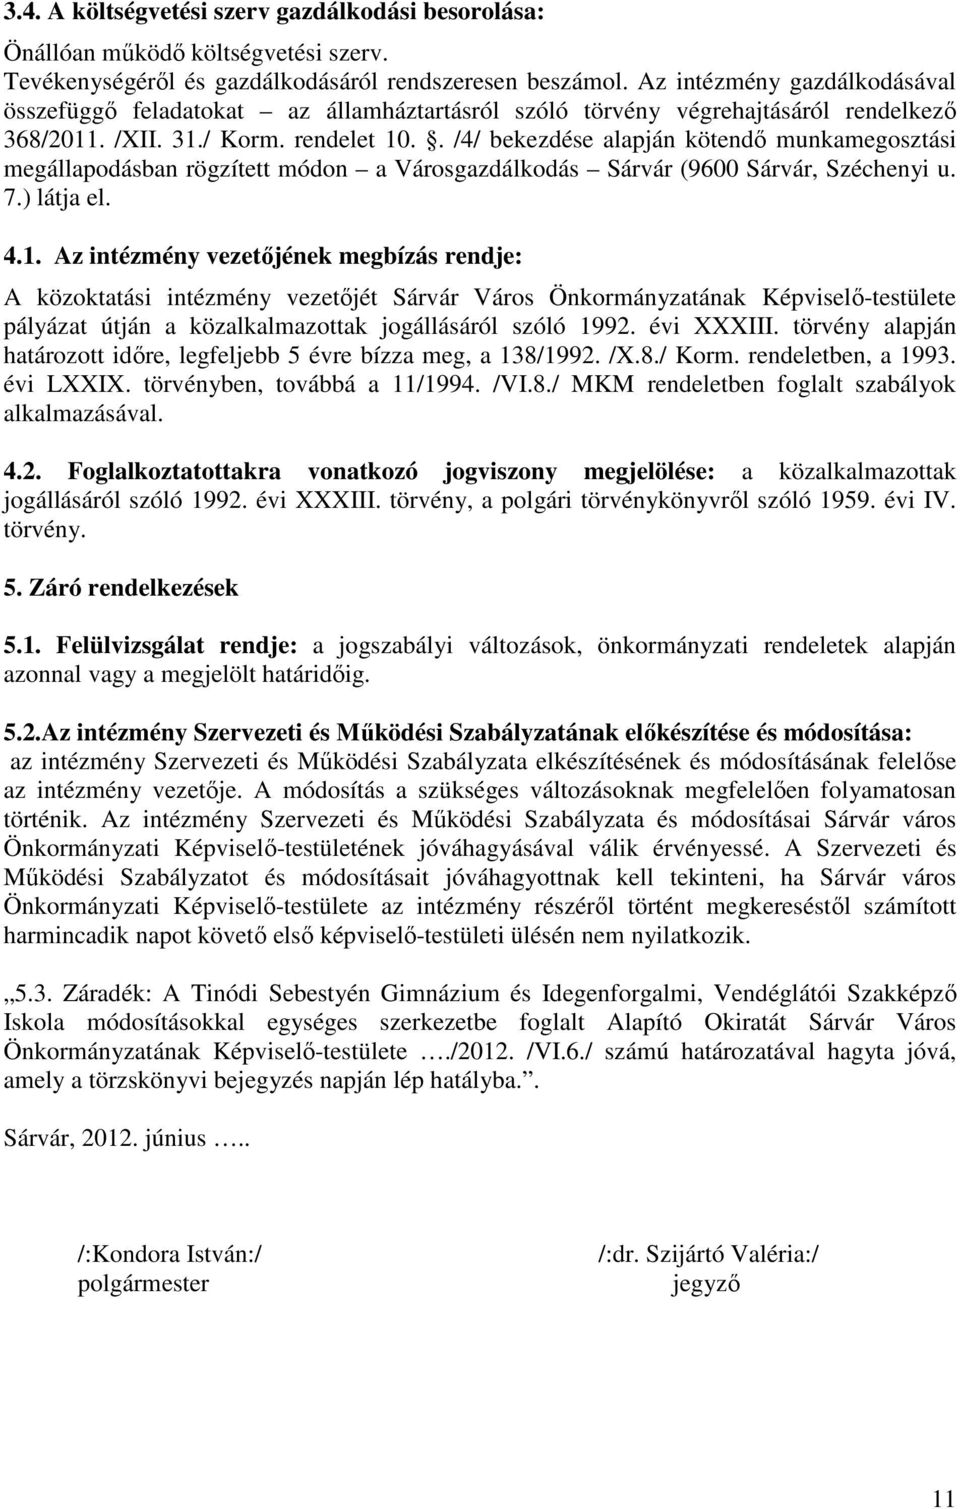 . /4/ bekezdése alapján kötendő munkamegosztási megállapodásban rögzített módon a Városgazdálkodás Sárvár (9600 Sárvár, Széchenyi u. 7.) látja el. 4.1.